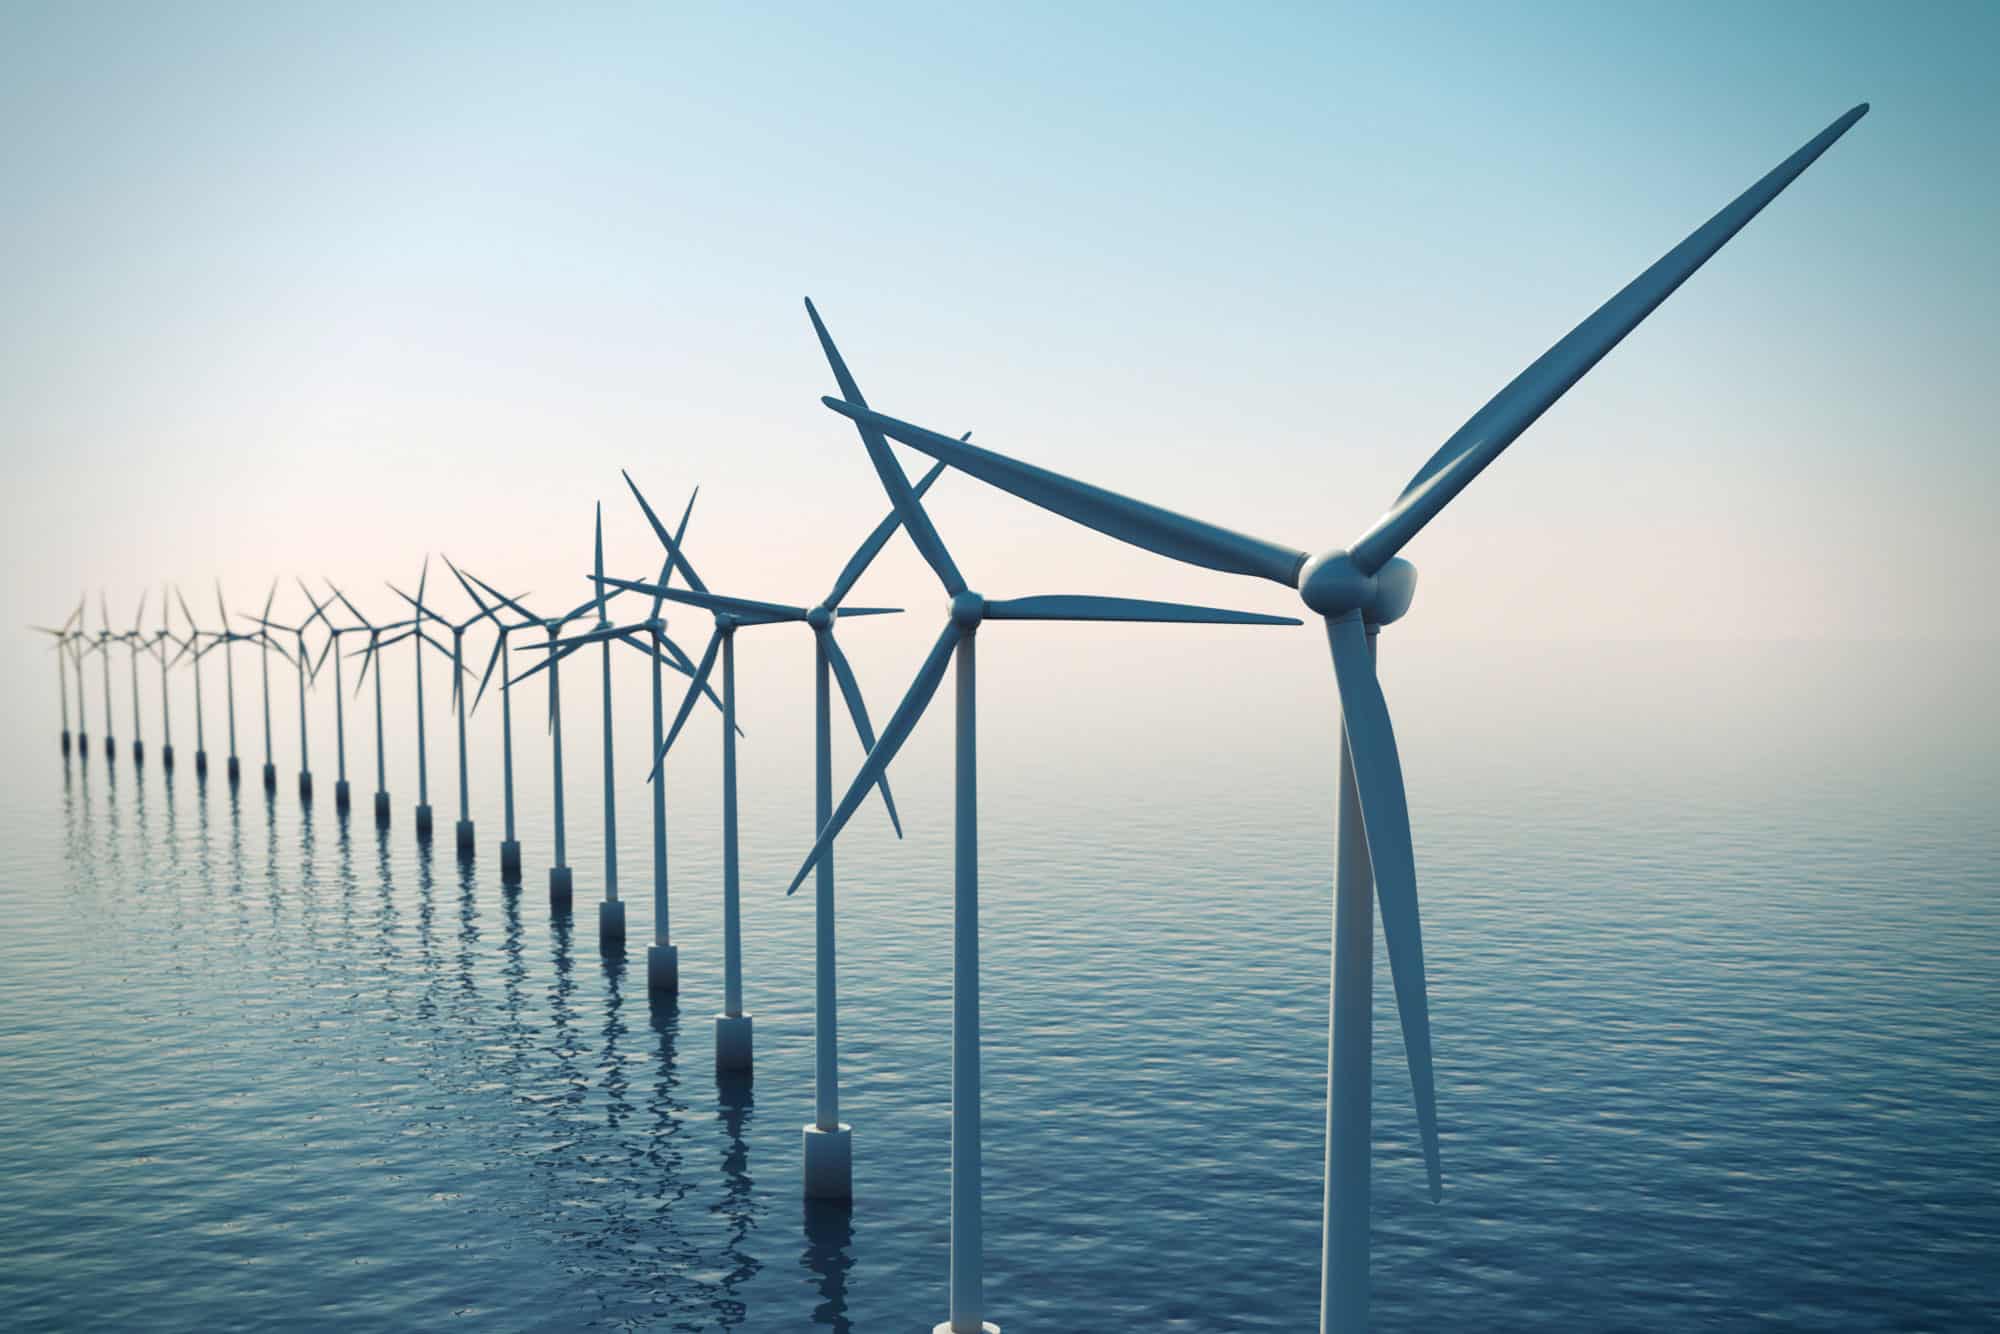 Offshore wind turbines in ocean